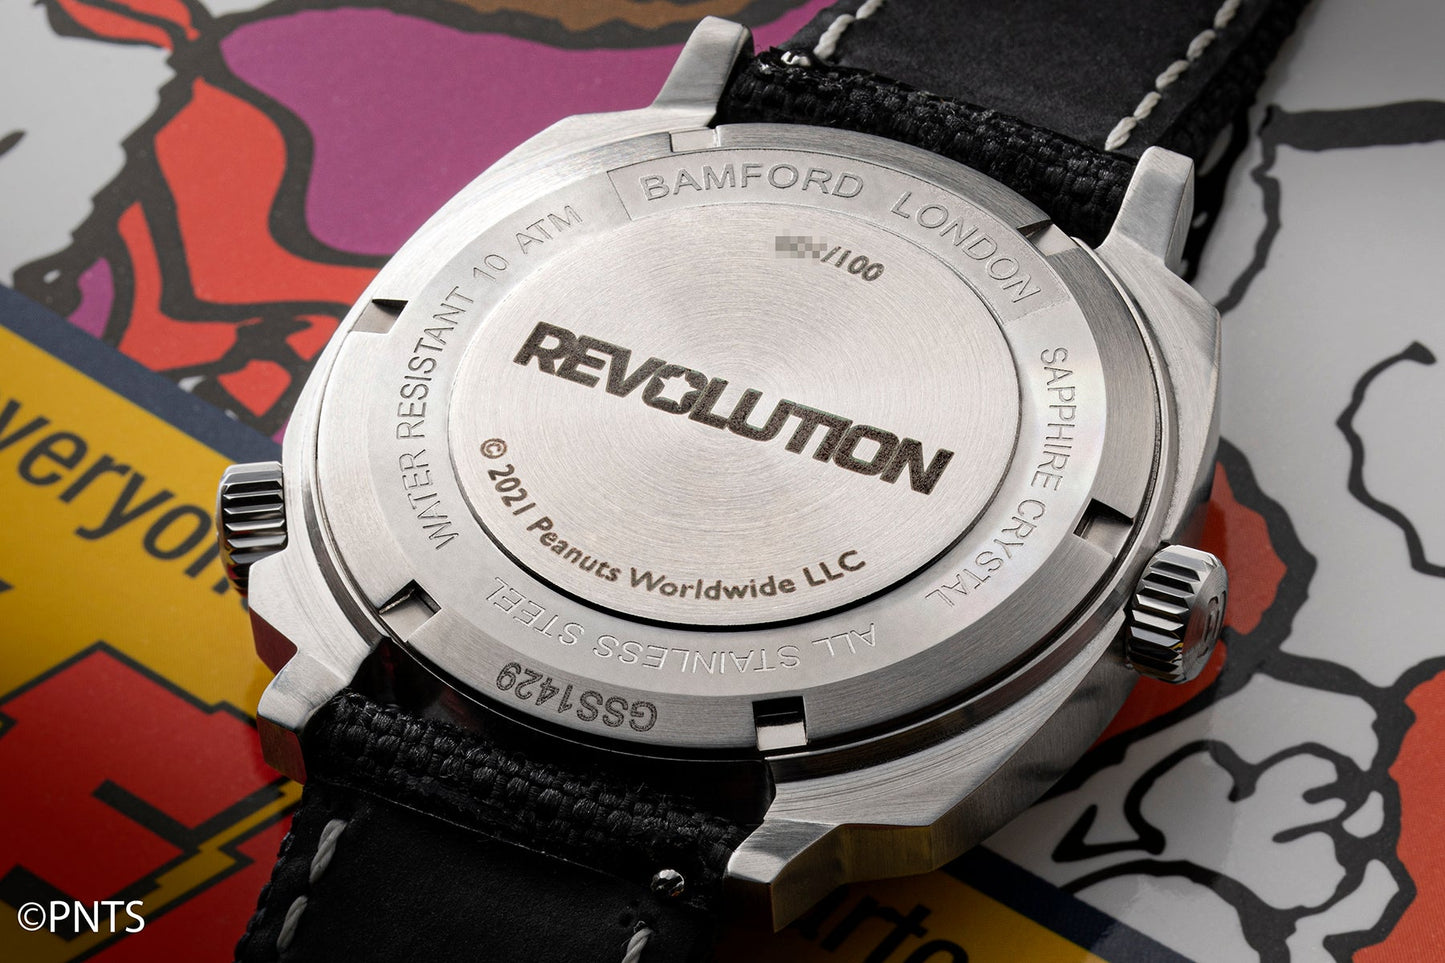 Bamford × Revolution GMT Joe Cool